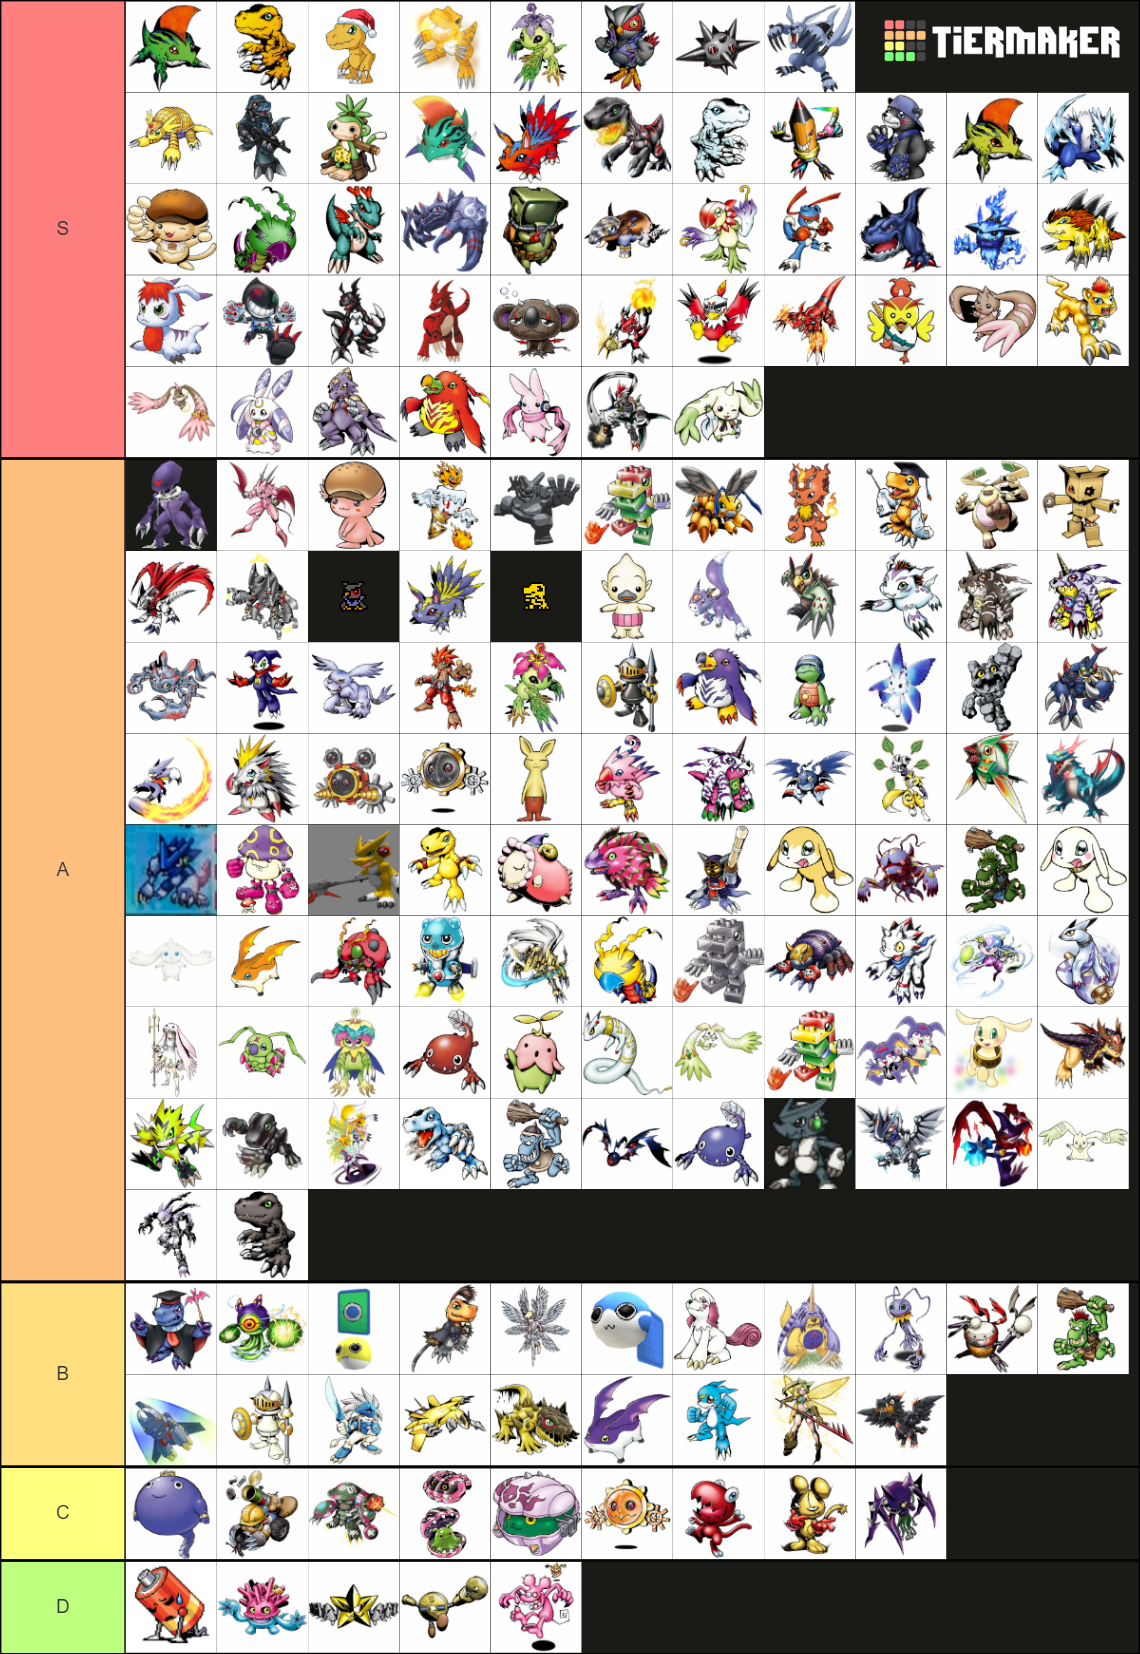 Rookie Digimon tier list by ShiroDrawz on DeviantArt